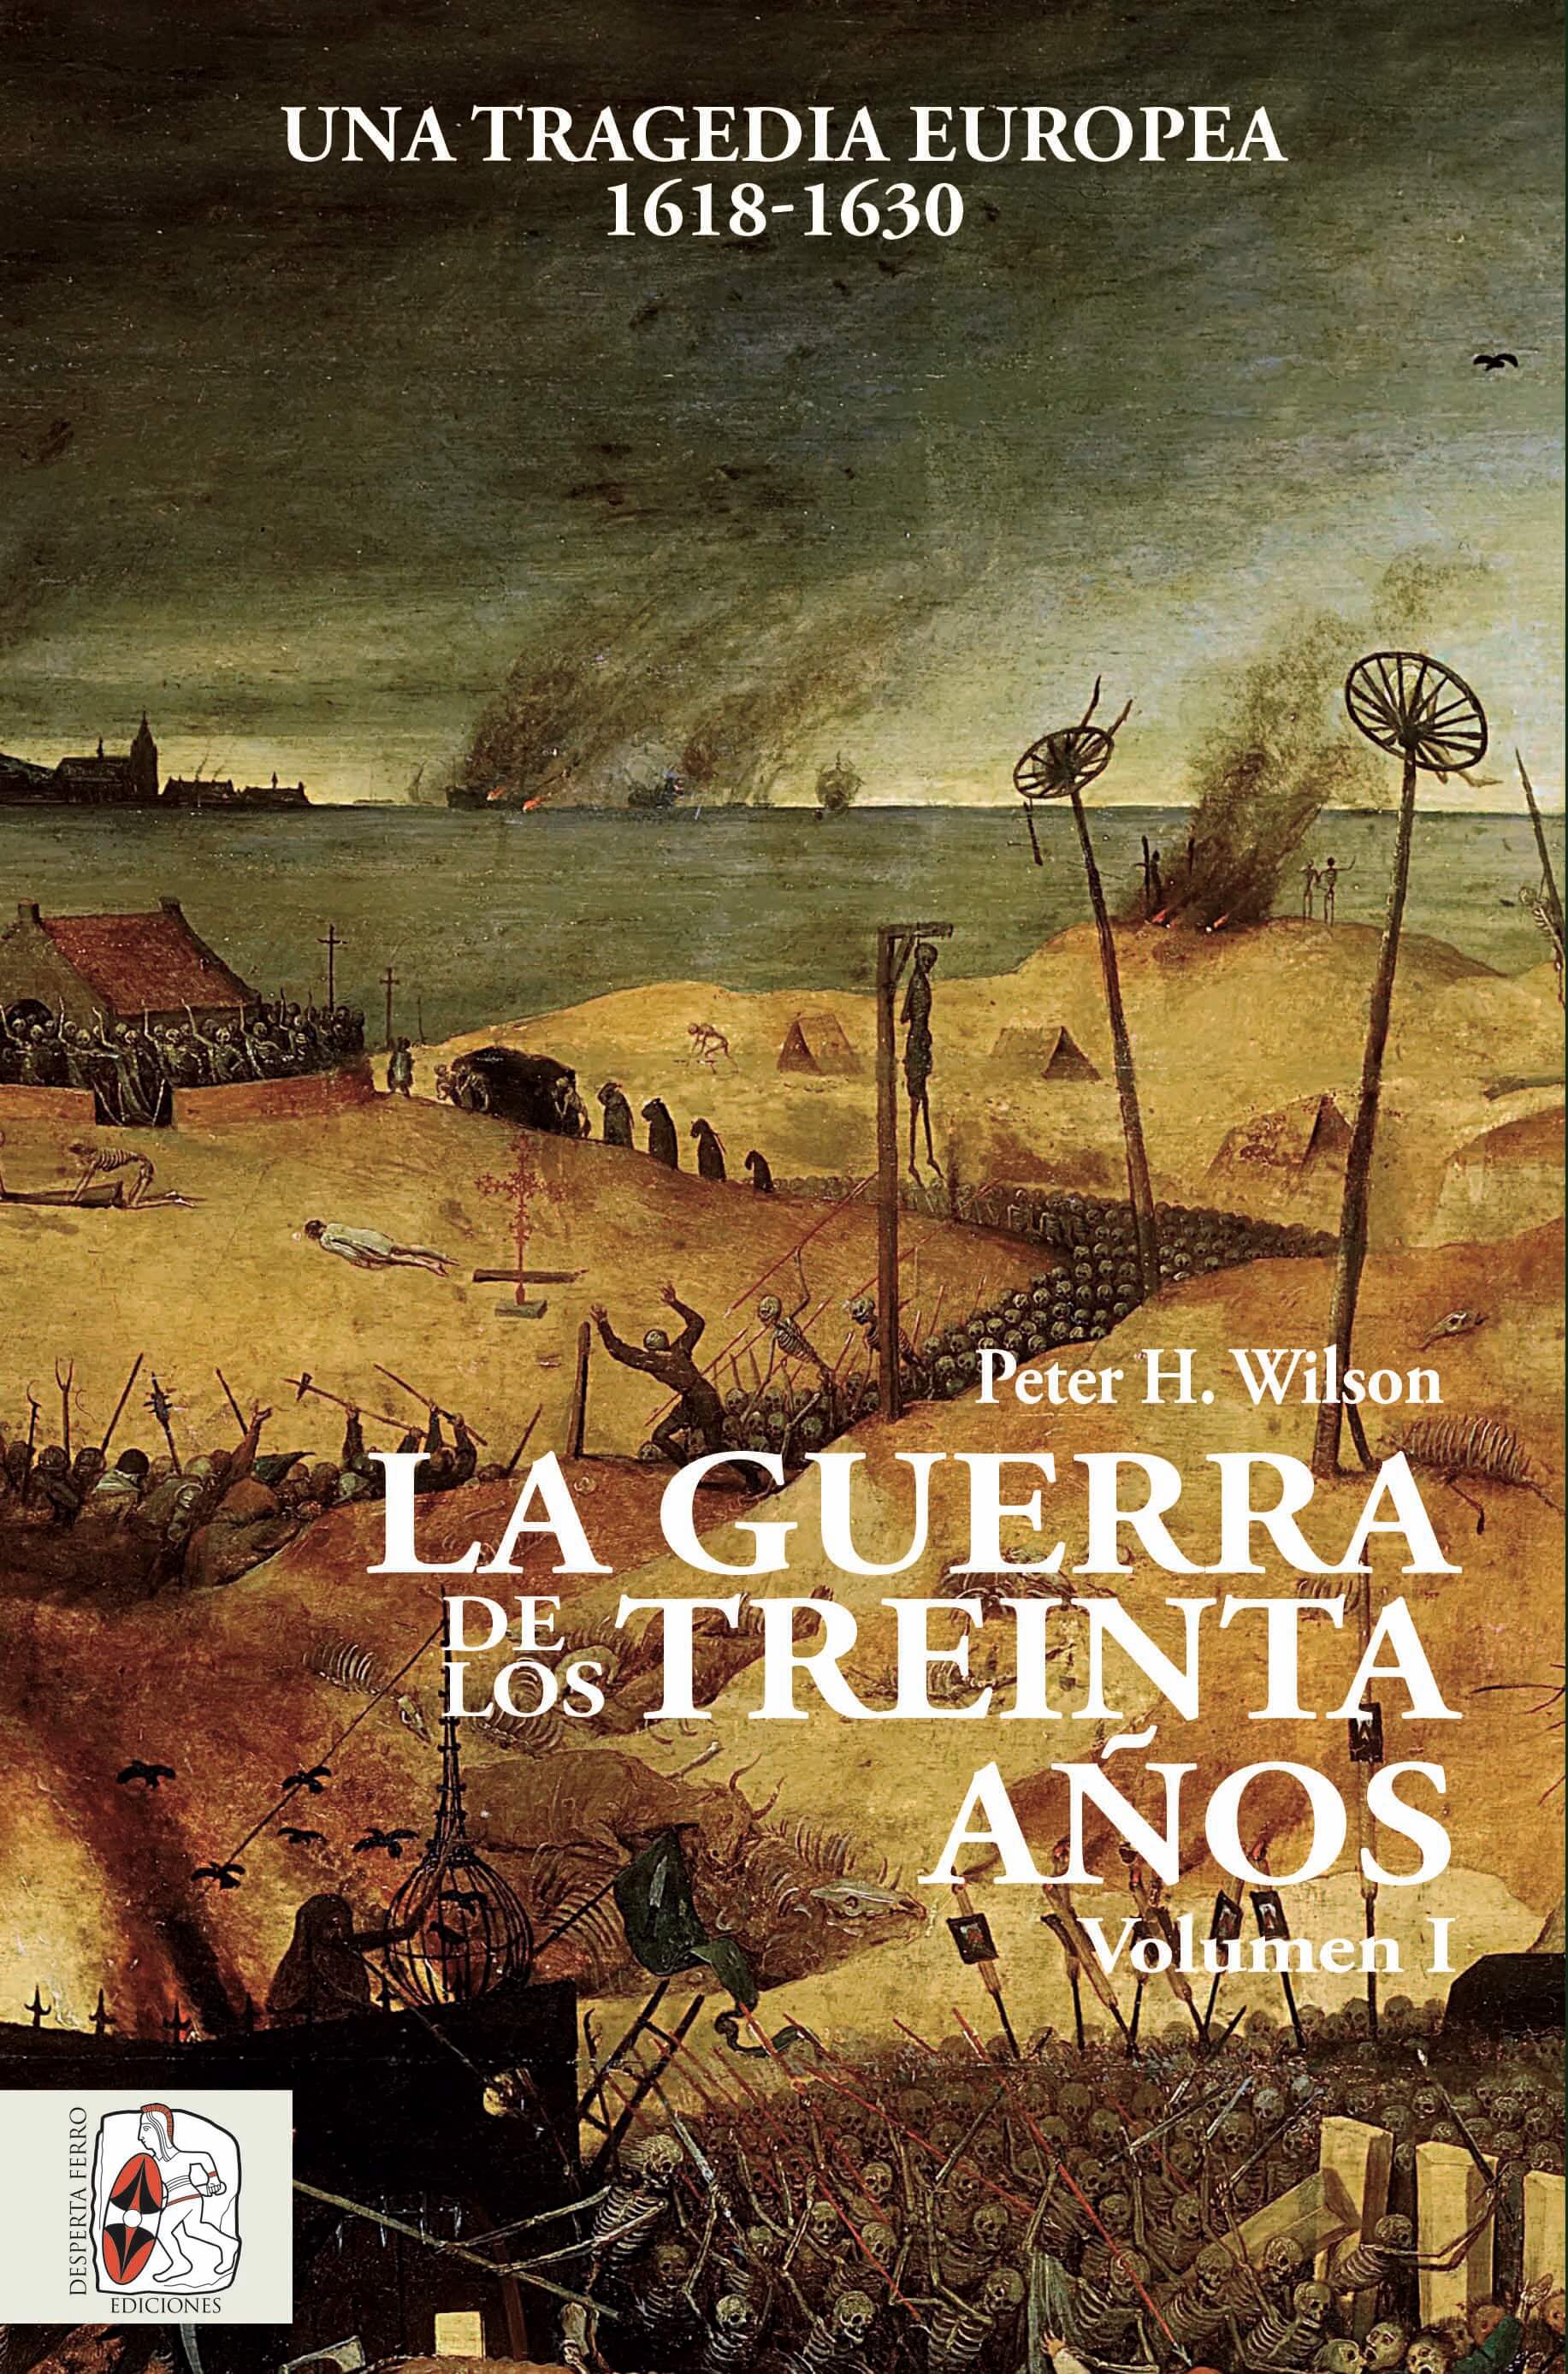 La Guerra de los Treinta Años, volumen I. Una tragedia europea, 1618-1630, por Peter H. Wilson